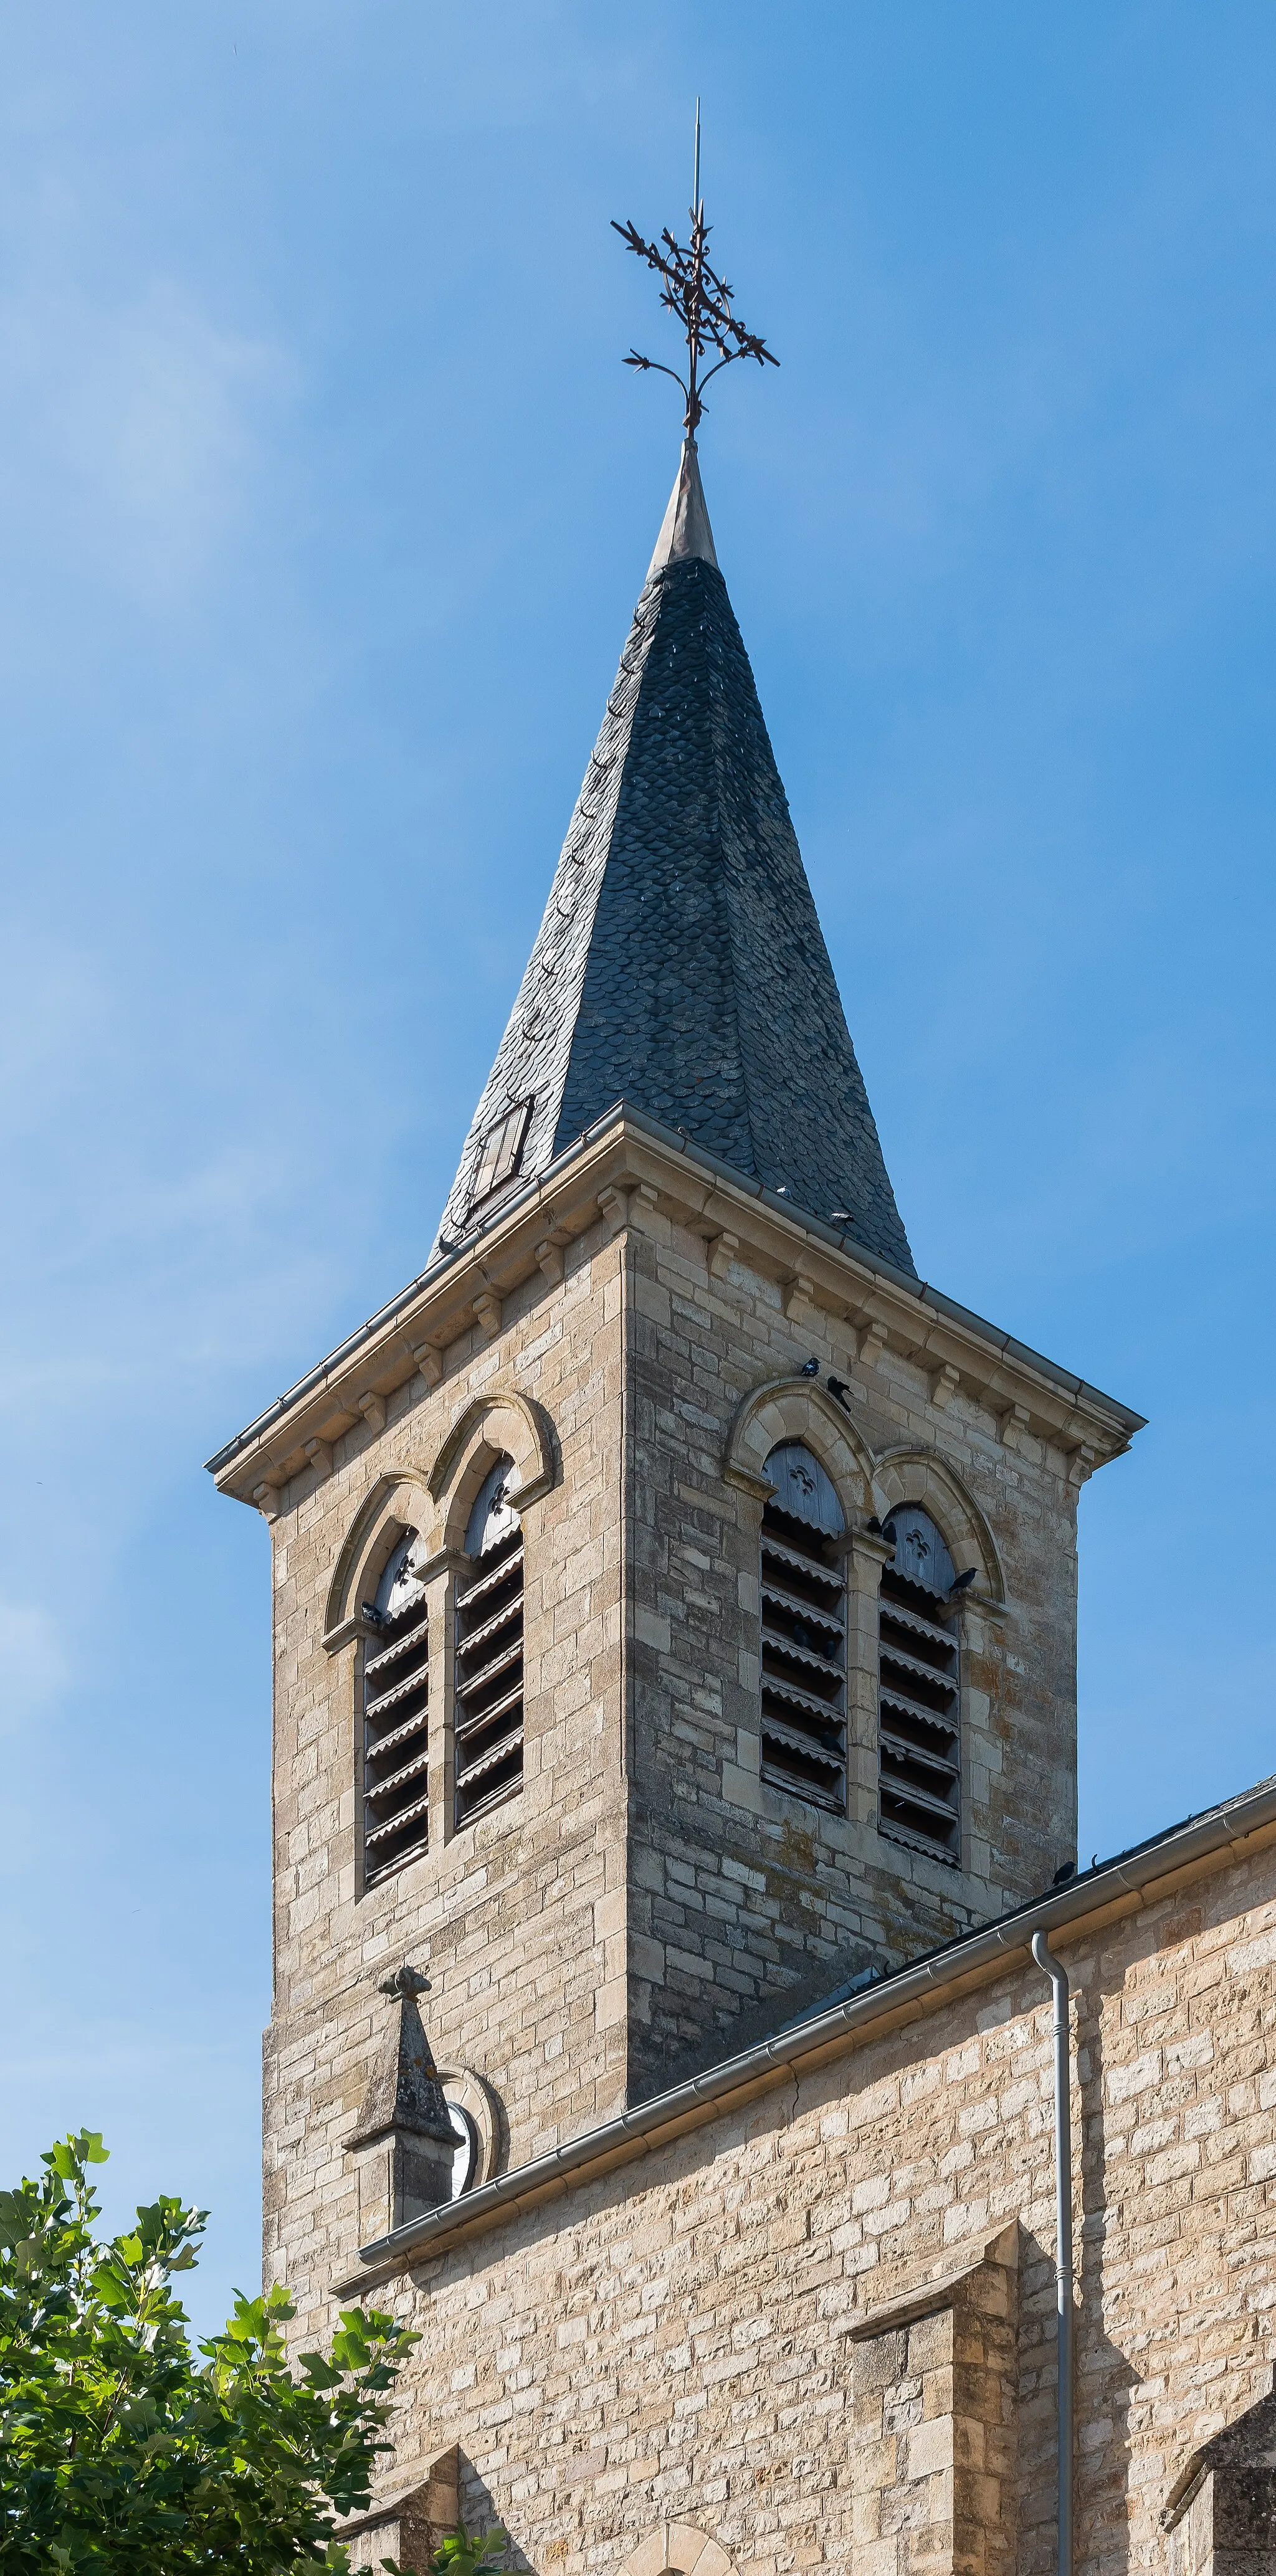 Photo showing: Bell tower of the Assumption church in Sévérac-l'Église, commune of Laissac-Sévérac l'Église, Aveyron, France